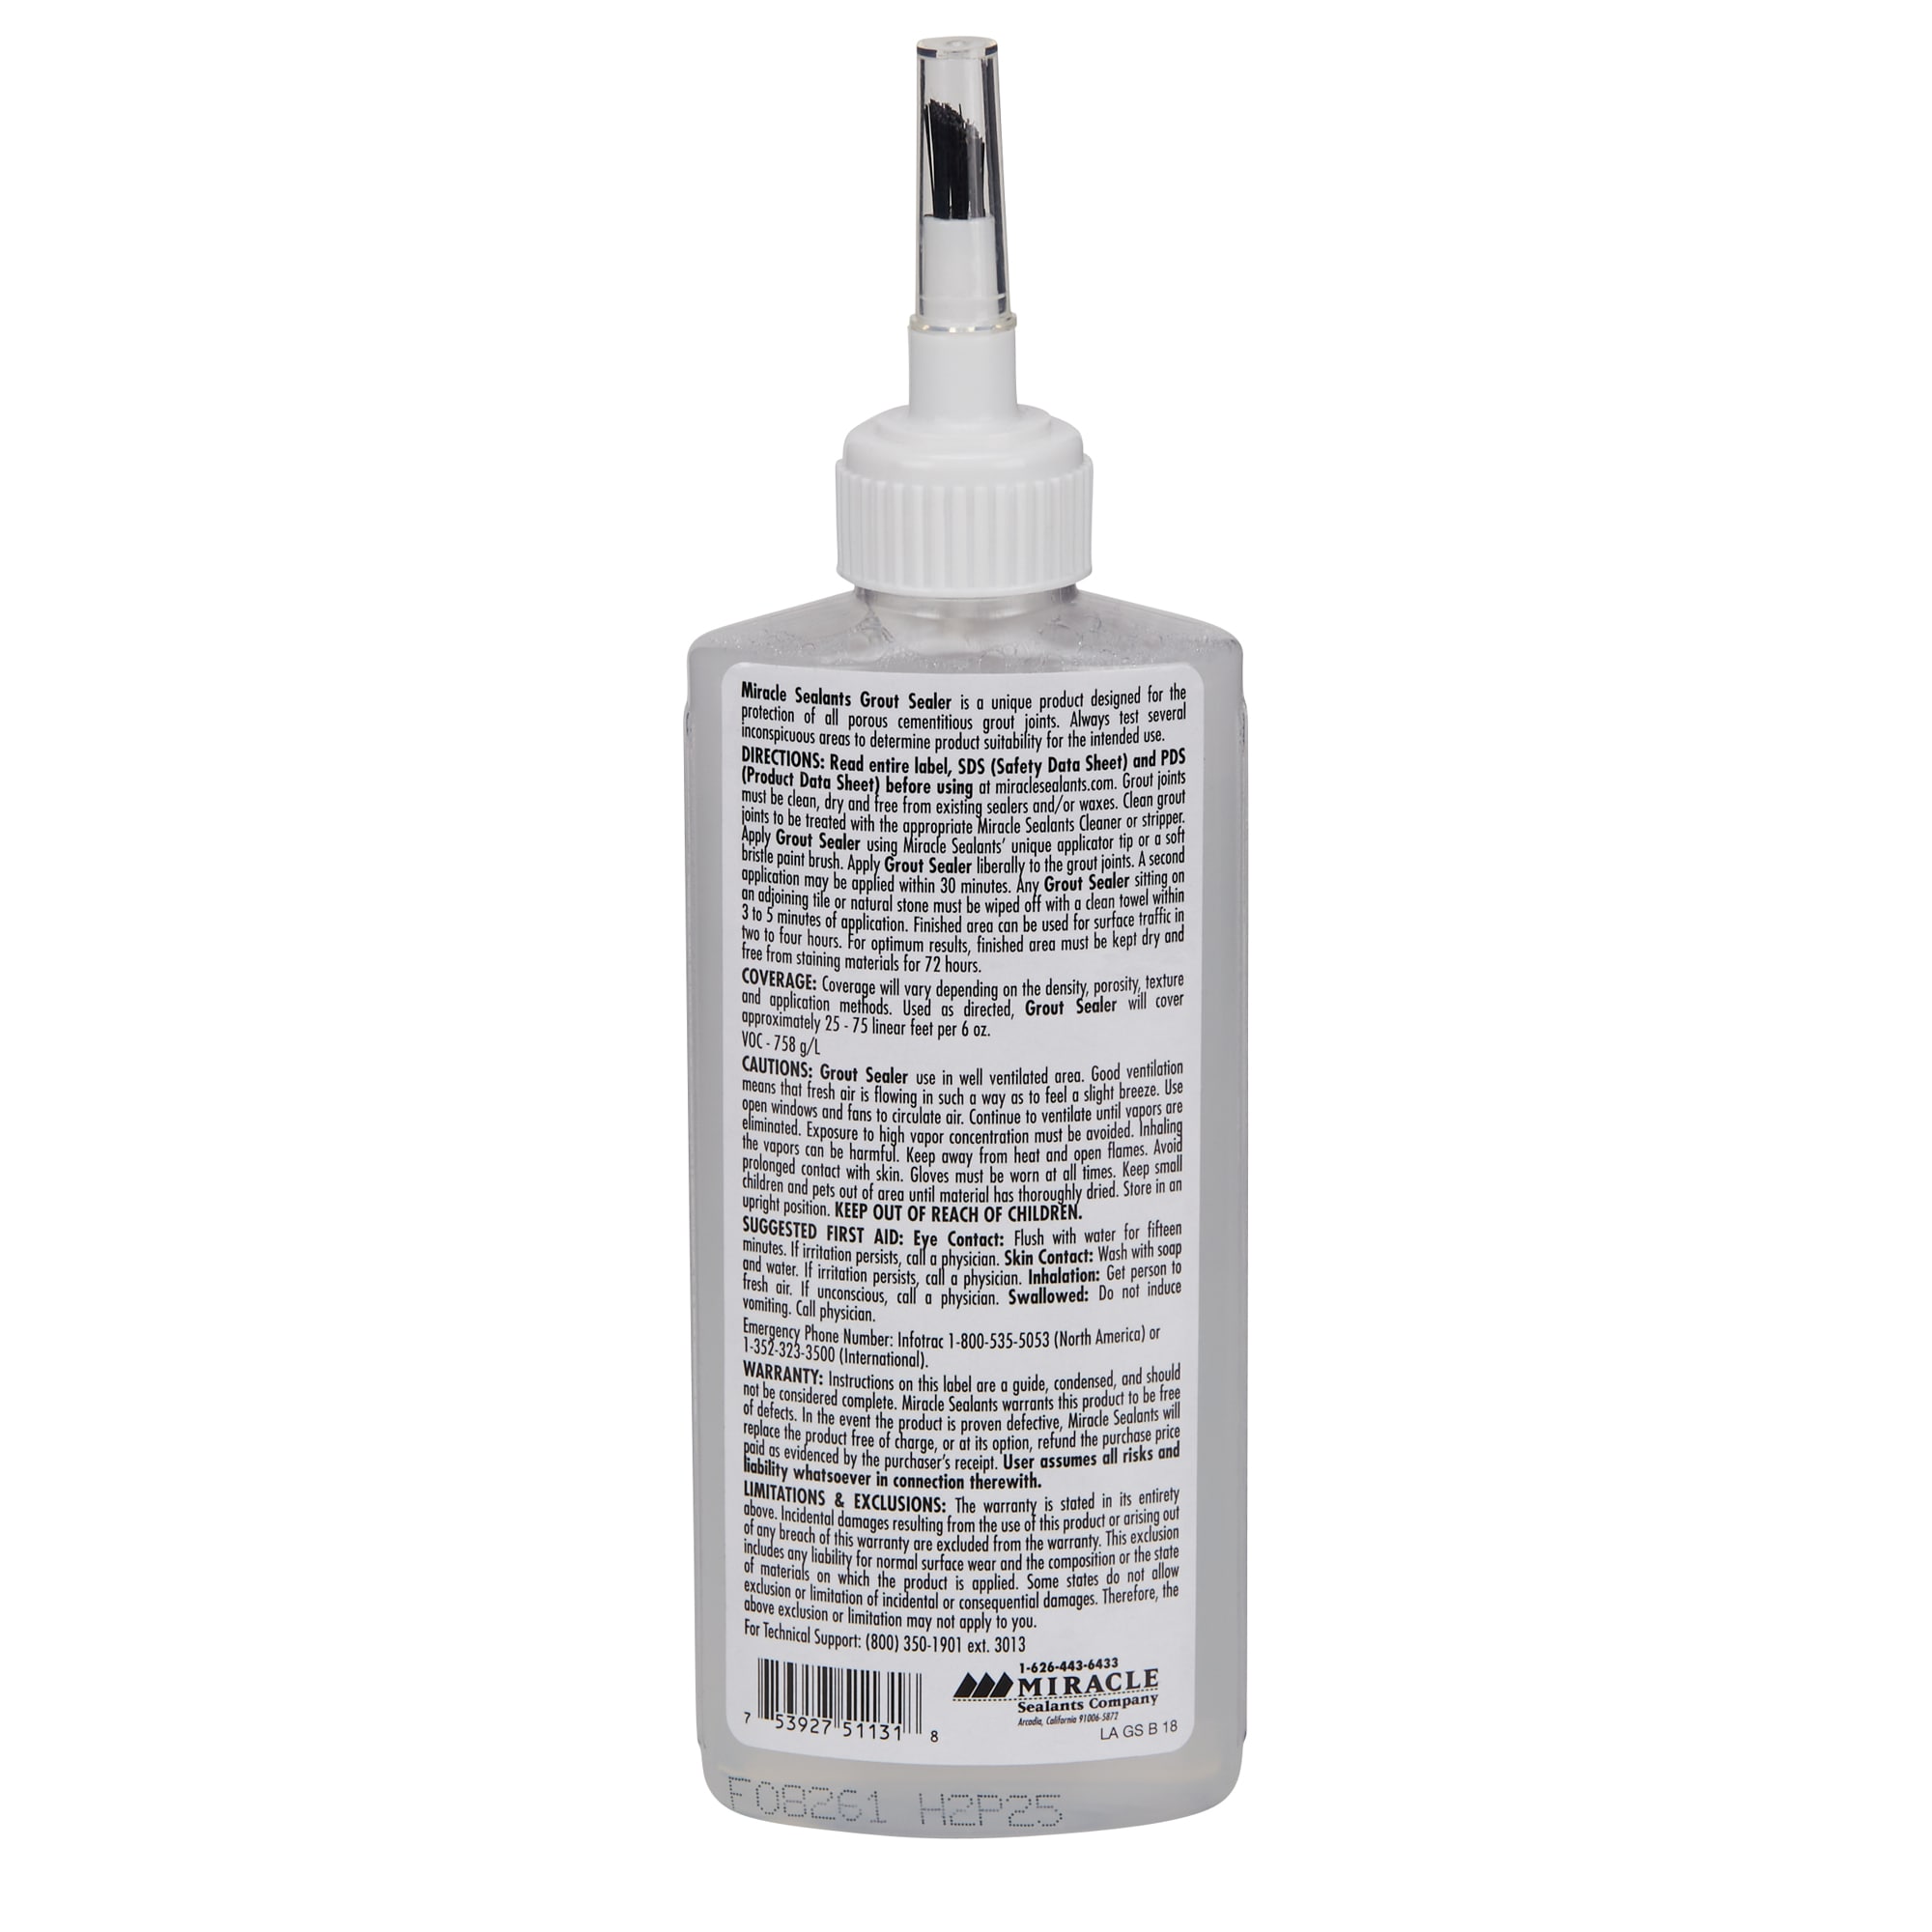 SuperiorBilt 85-061 Grout Sealer Plastic Bottle Brush Applicator Only Empty  Bottle Refillable – Carpets & More Direct